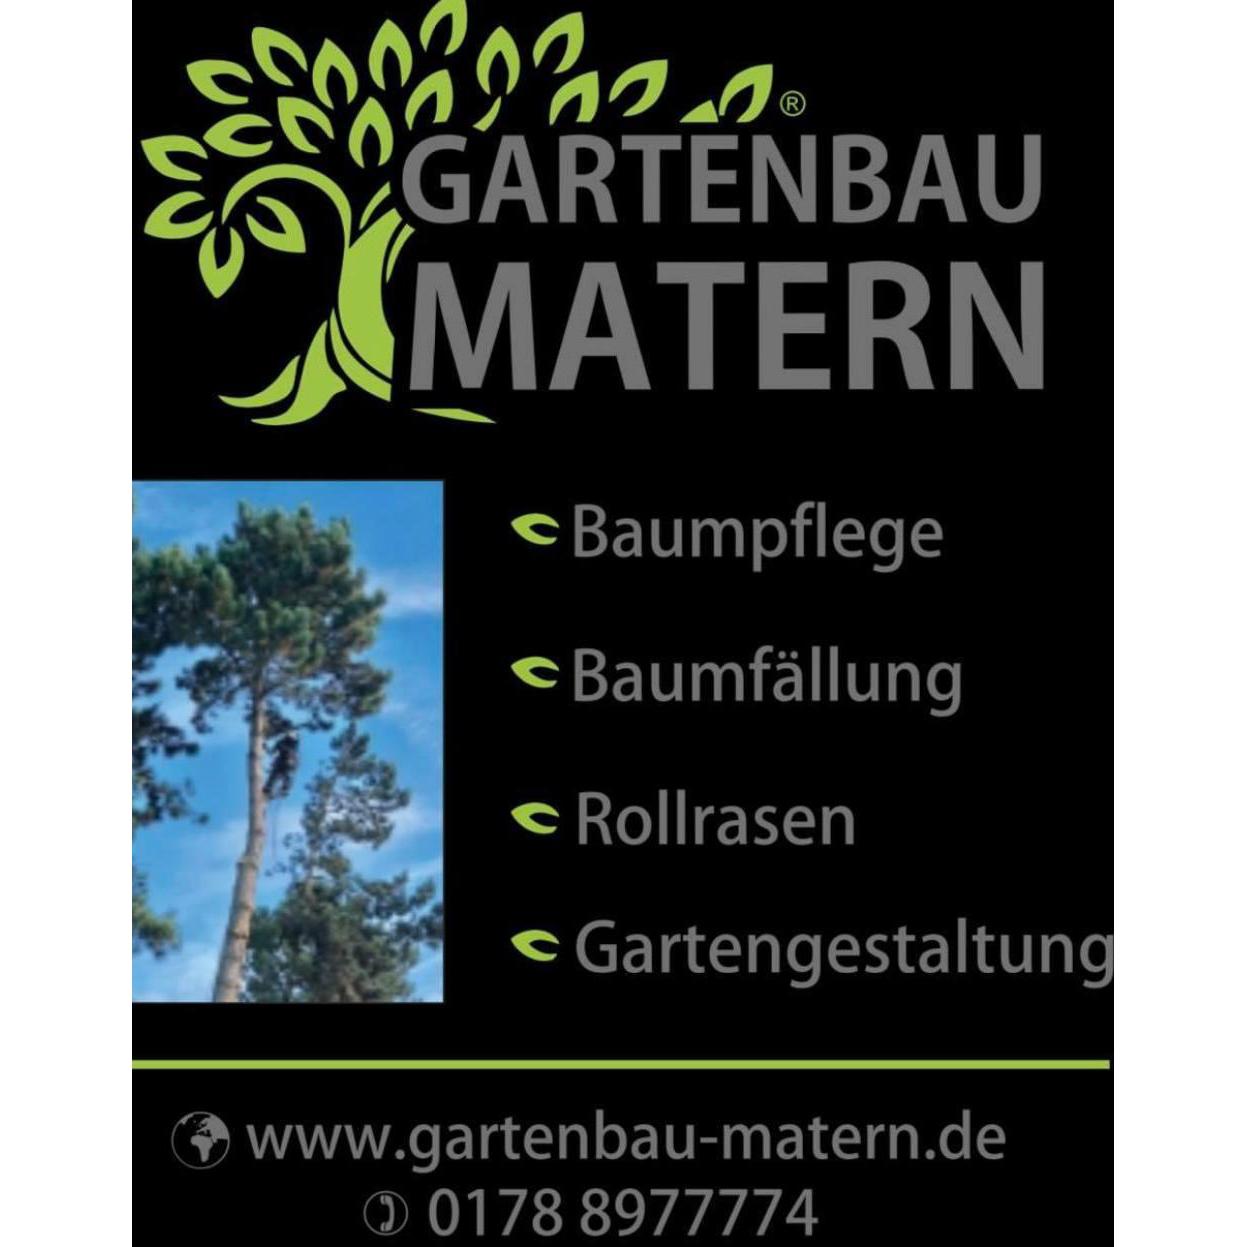 Baumdienst Baumfällung Gartengestaltung-Gartenservice-Baumpflege Logo